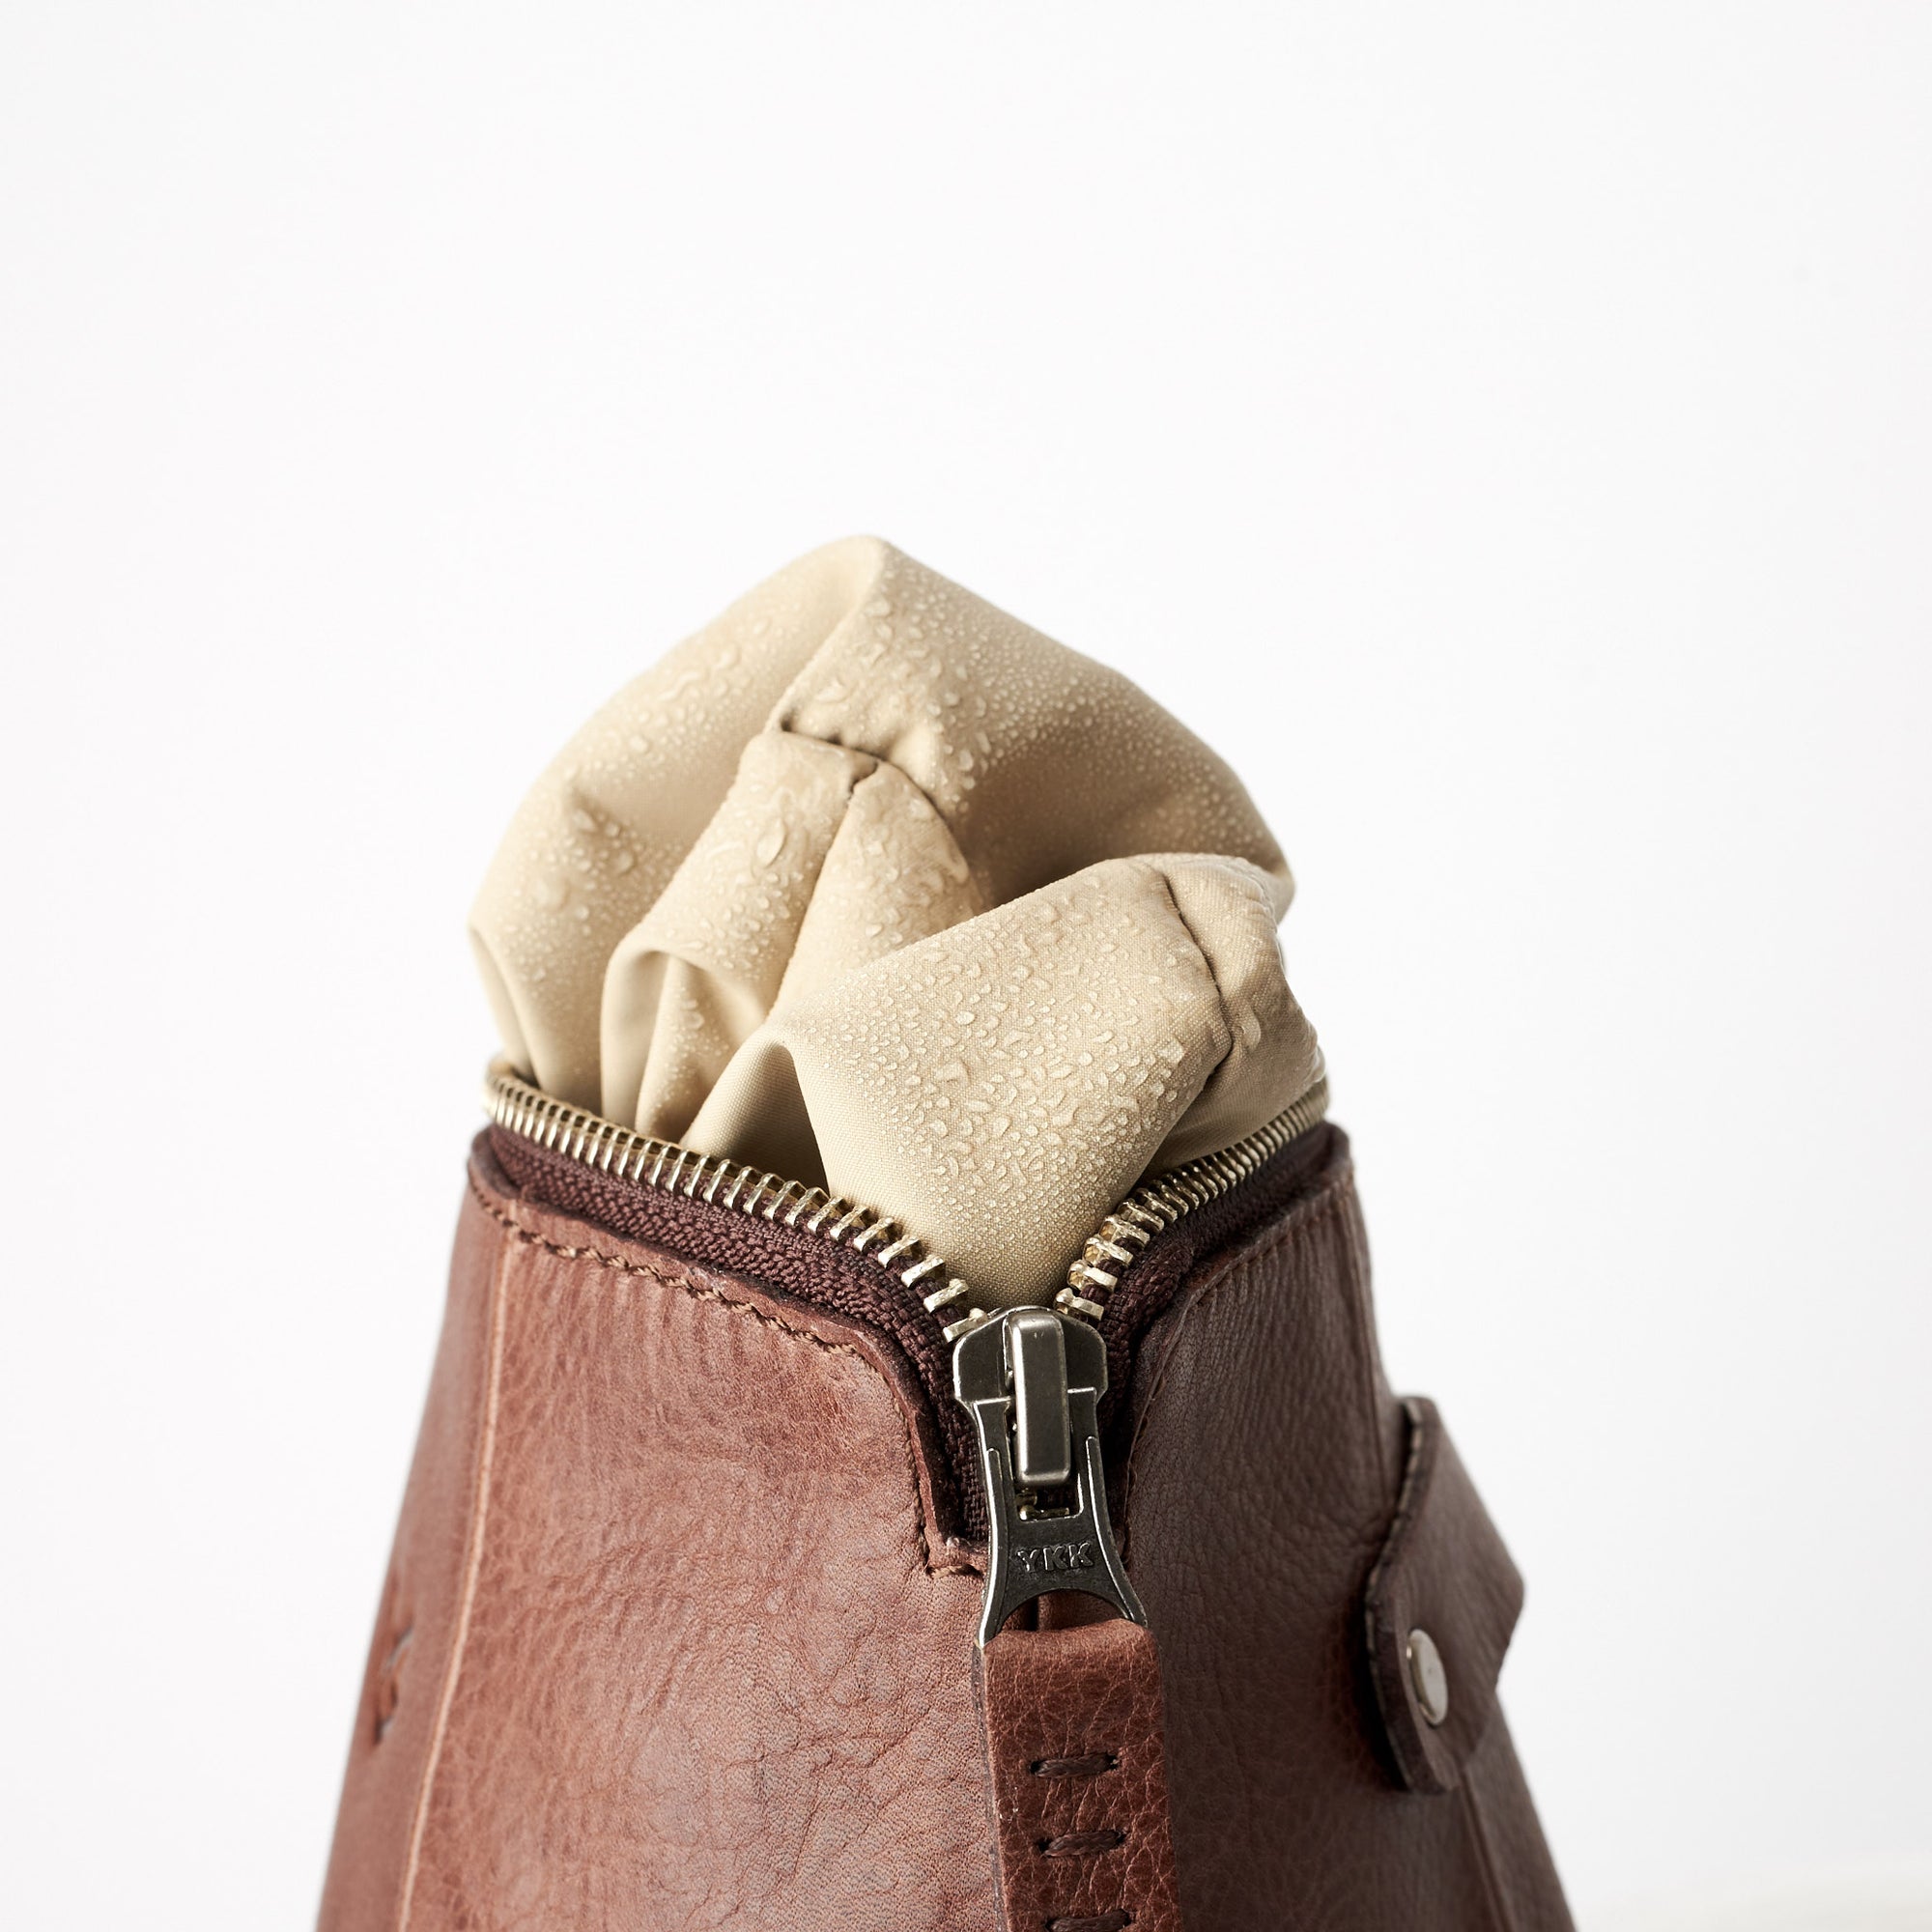 Unique Brown leather toiletry bag. Leather boxer dopp kit for men. Custom groomsmen gifts. Travel bag for men